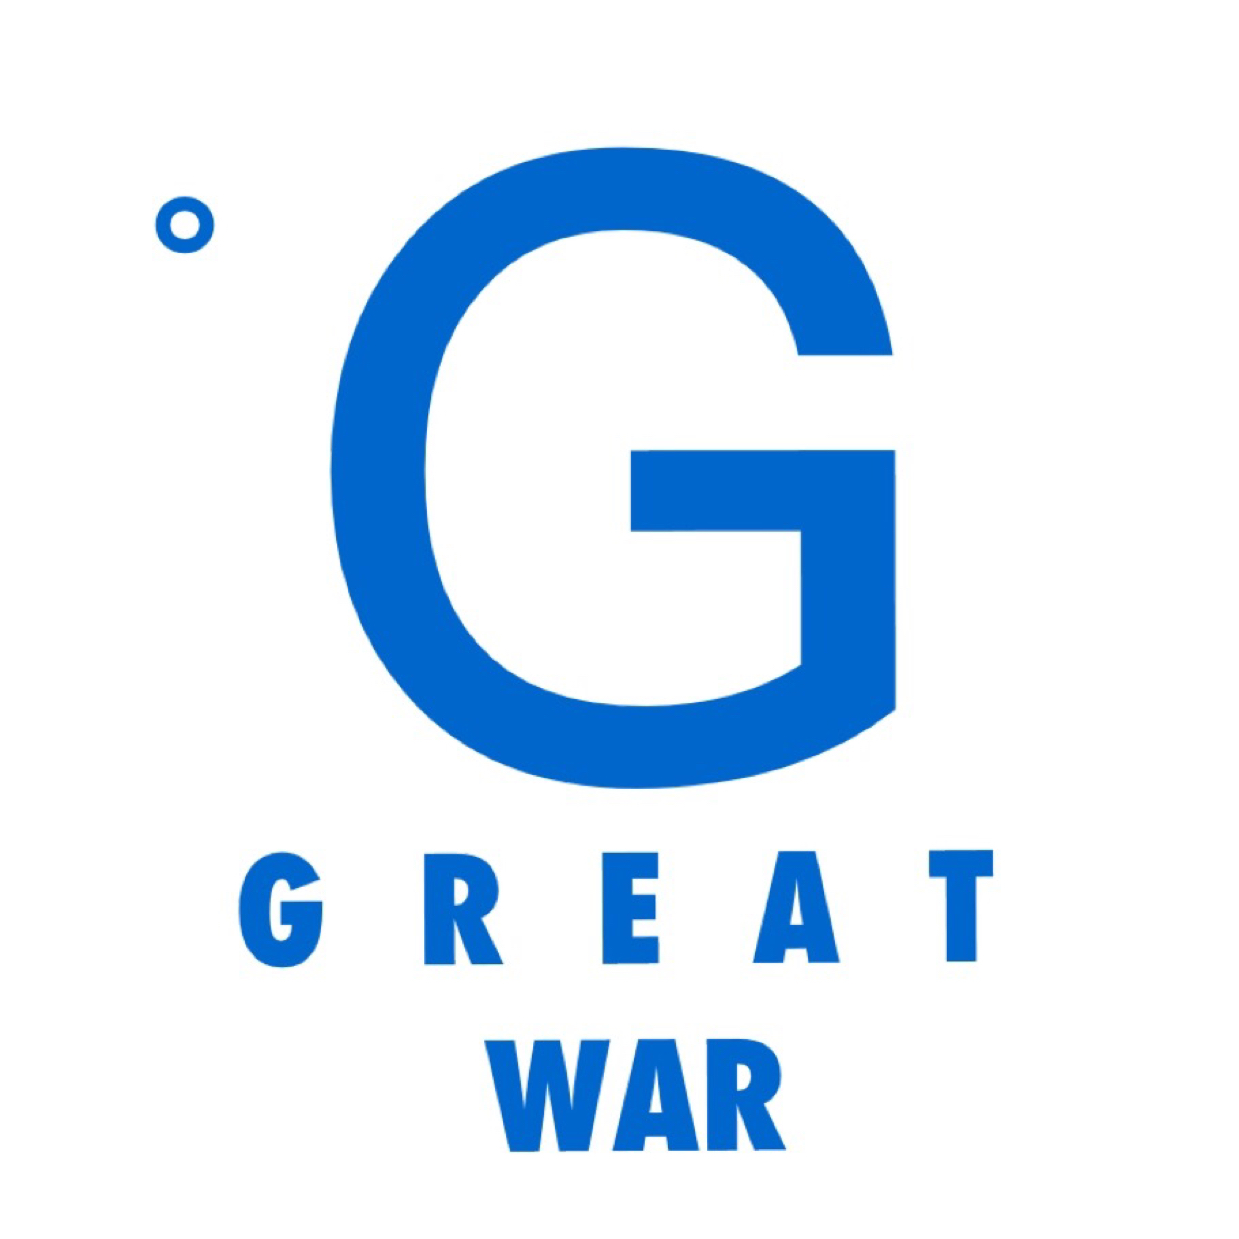 GREAT WAR